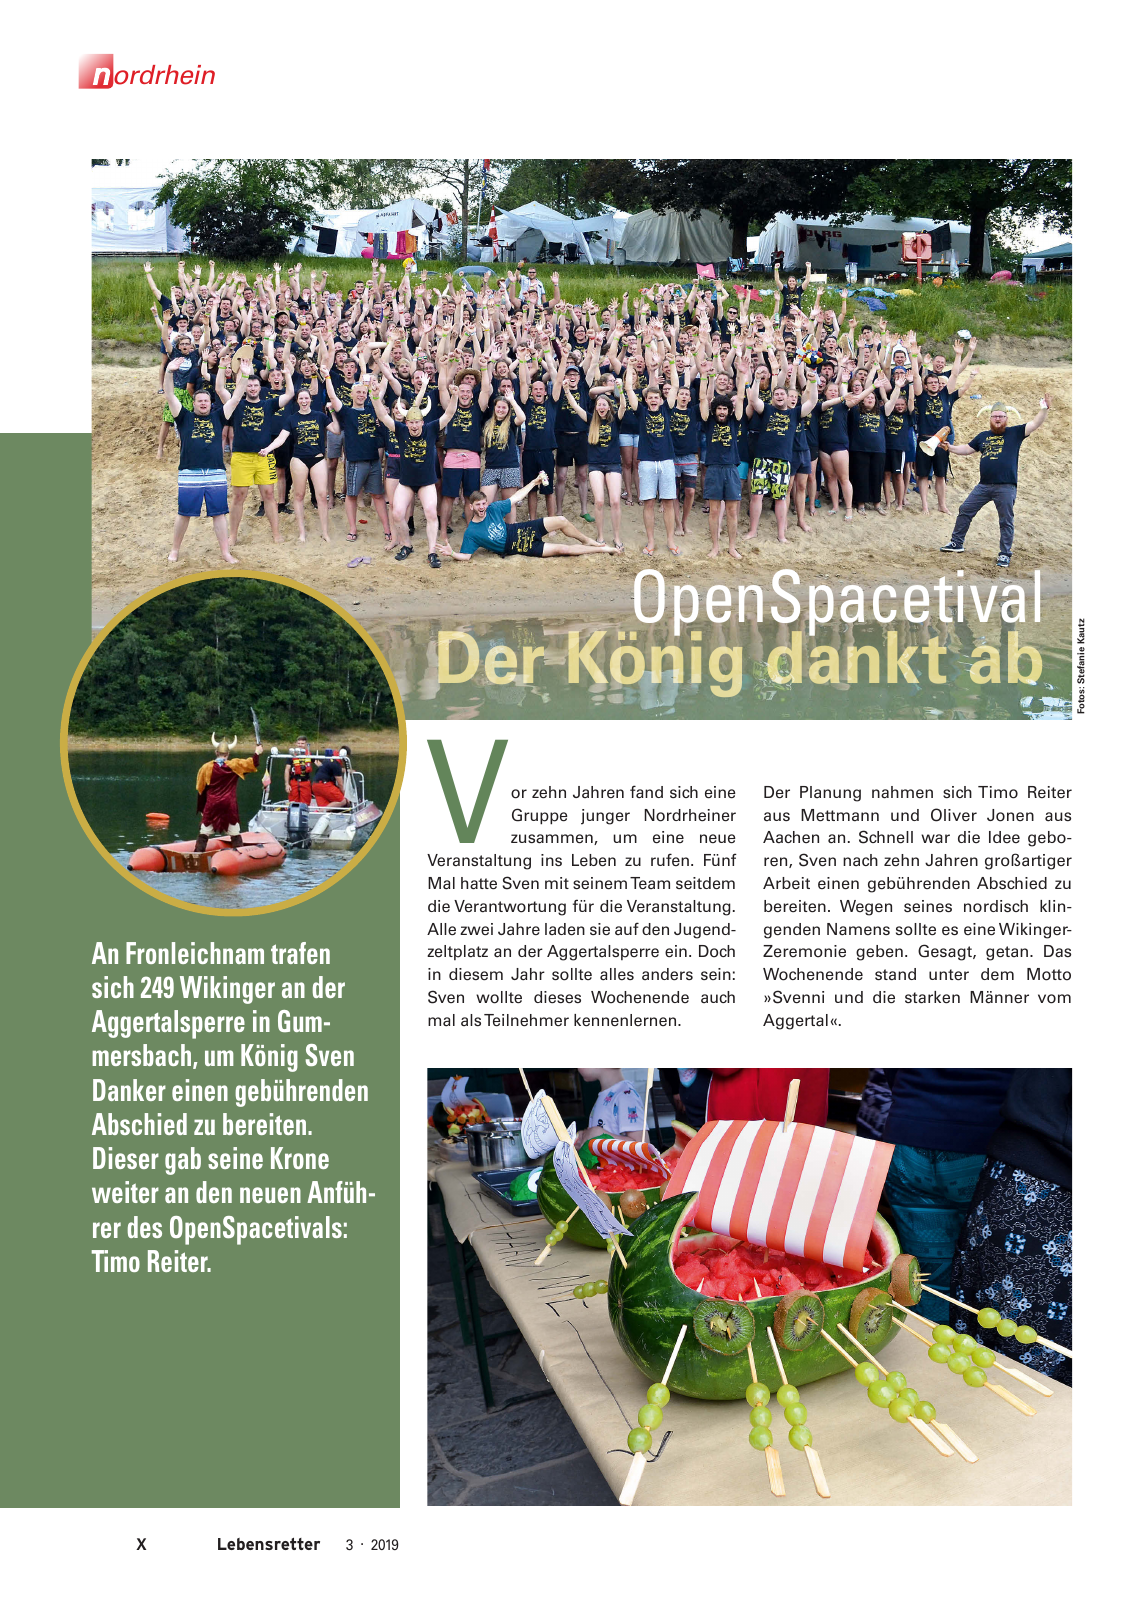 Vorschau Lebensretter 3/2019 - Nordrhein Regionalausgabe Seite 12